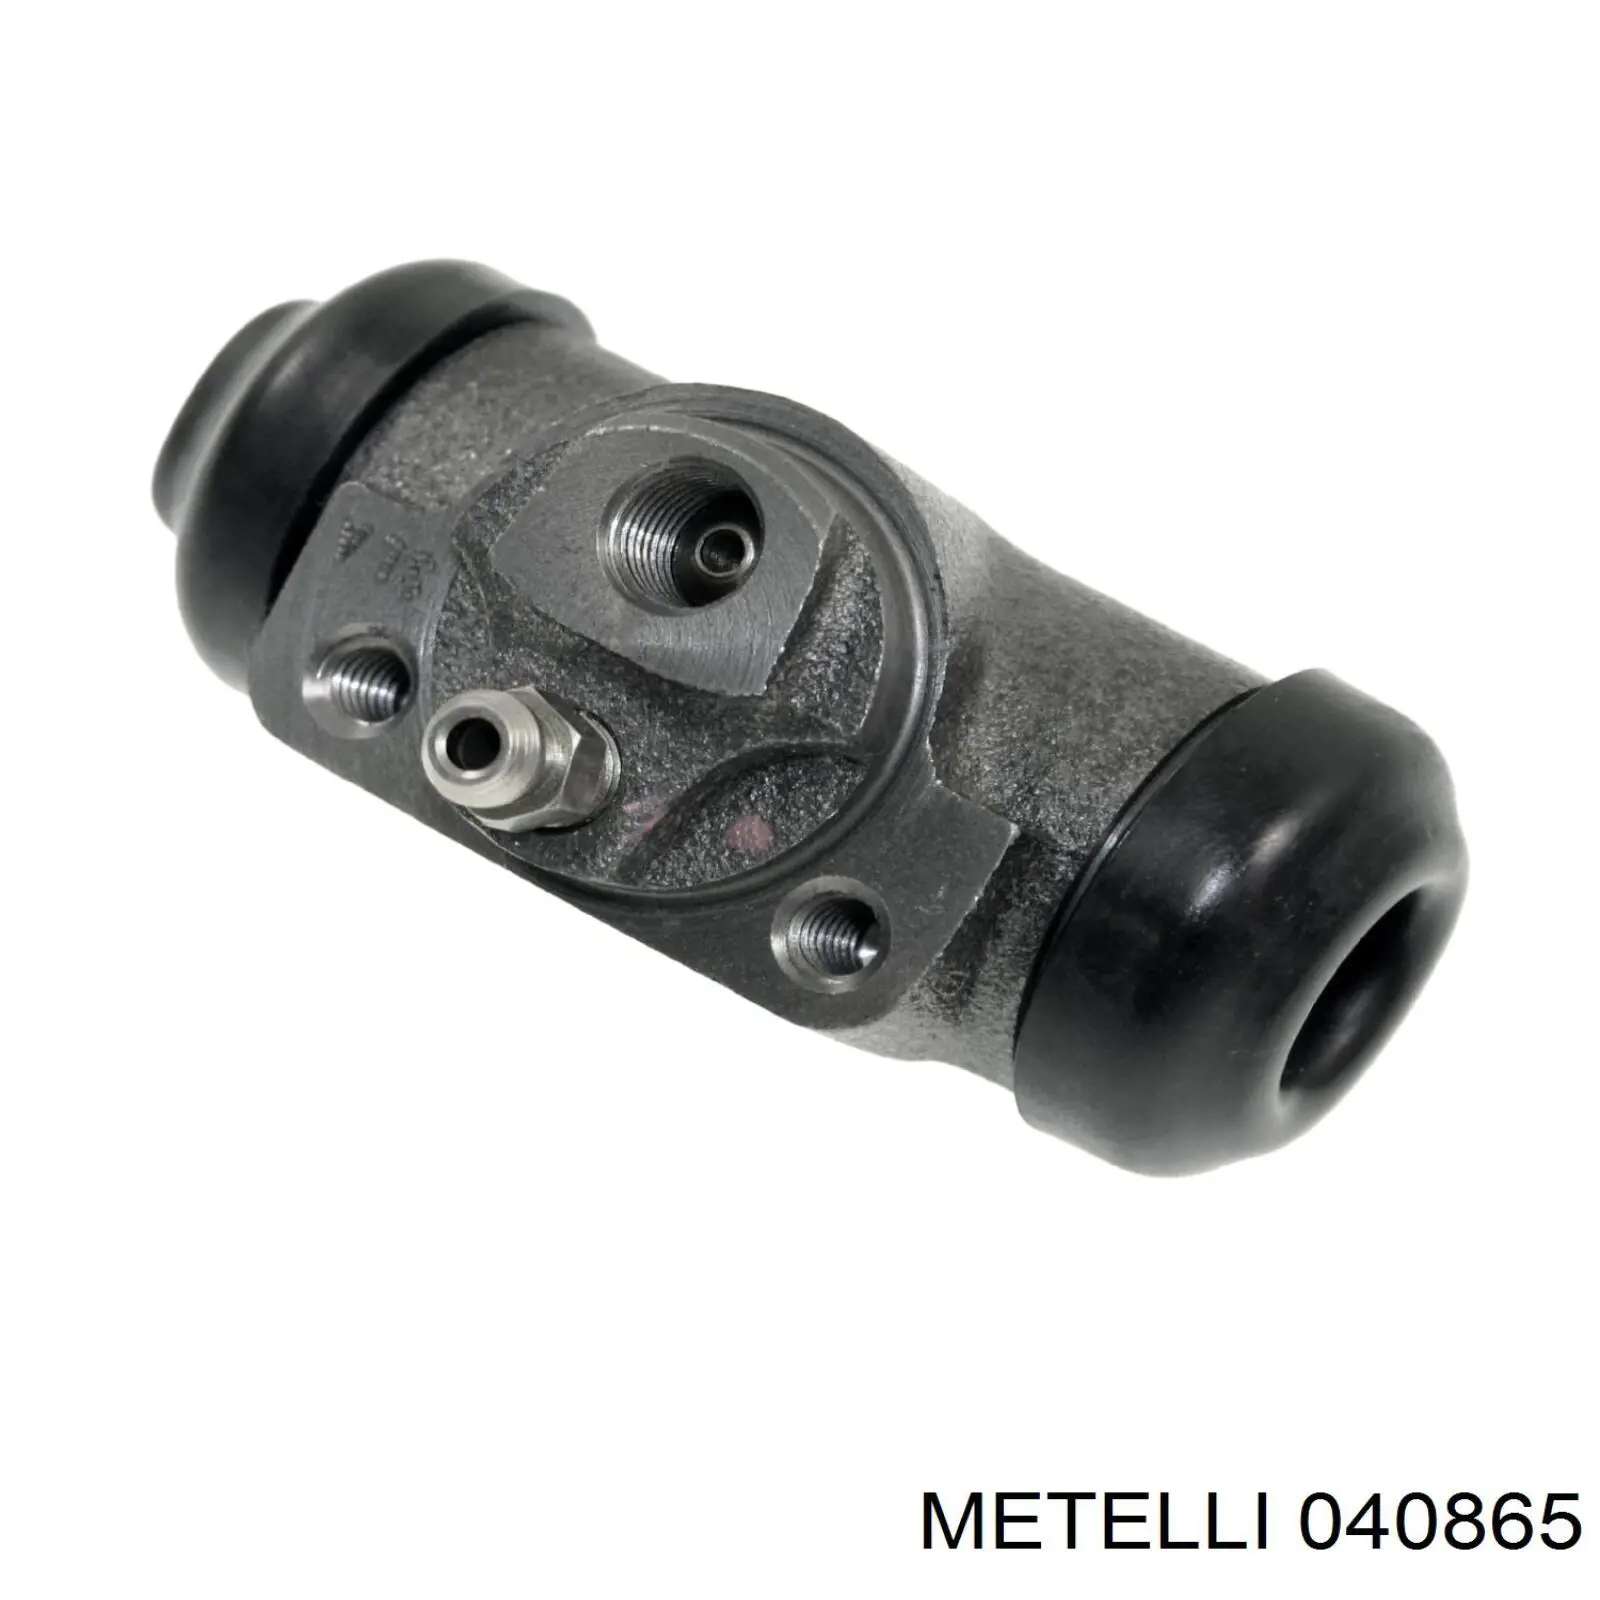 04-0865 Metelli цилиндр тормозной колесный рабочий задний